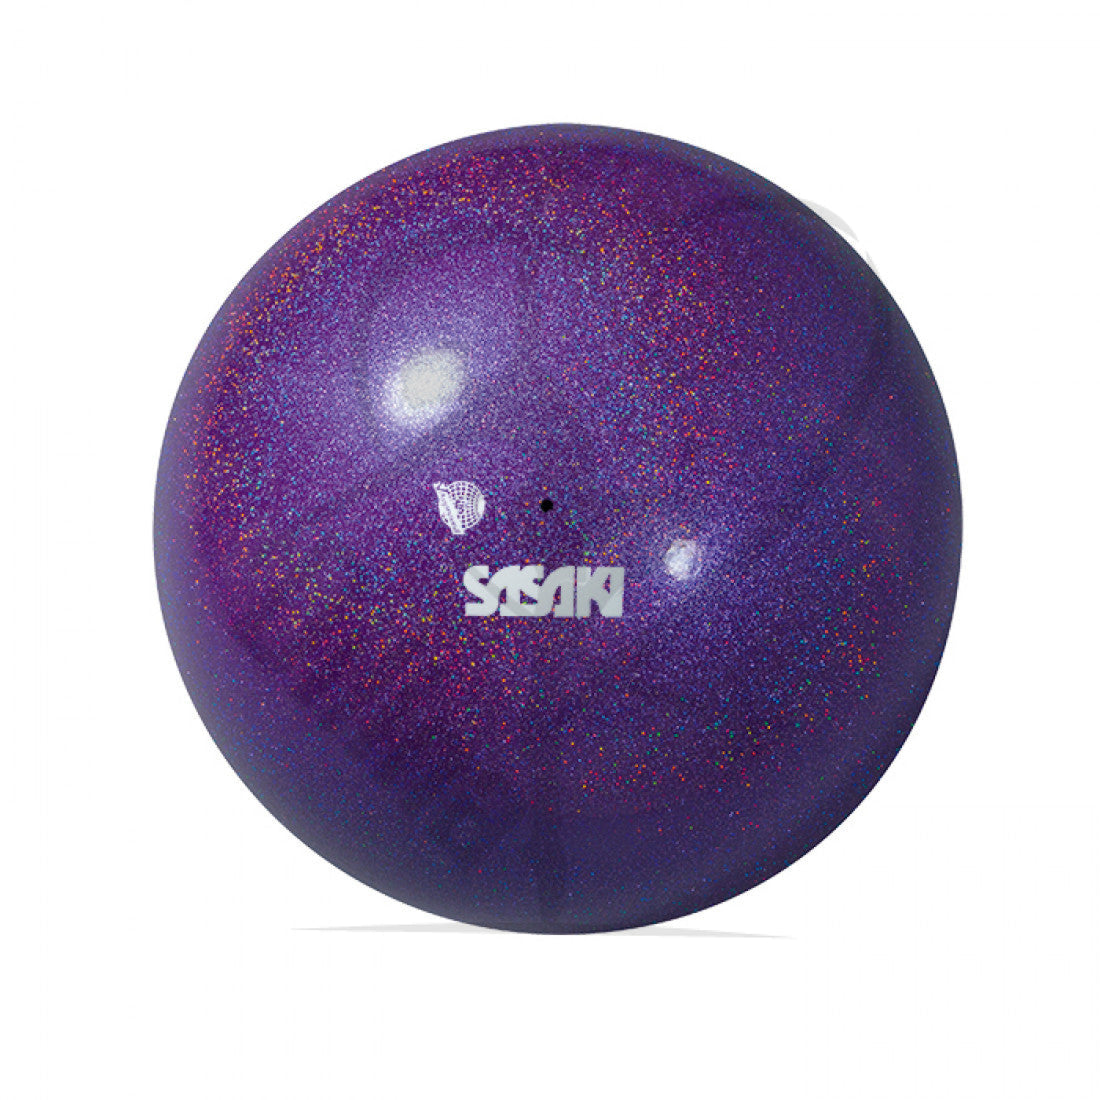 Sasaki Meetia Ball 18.5Cm Voilet Balls